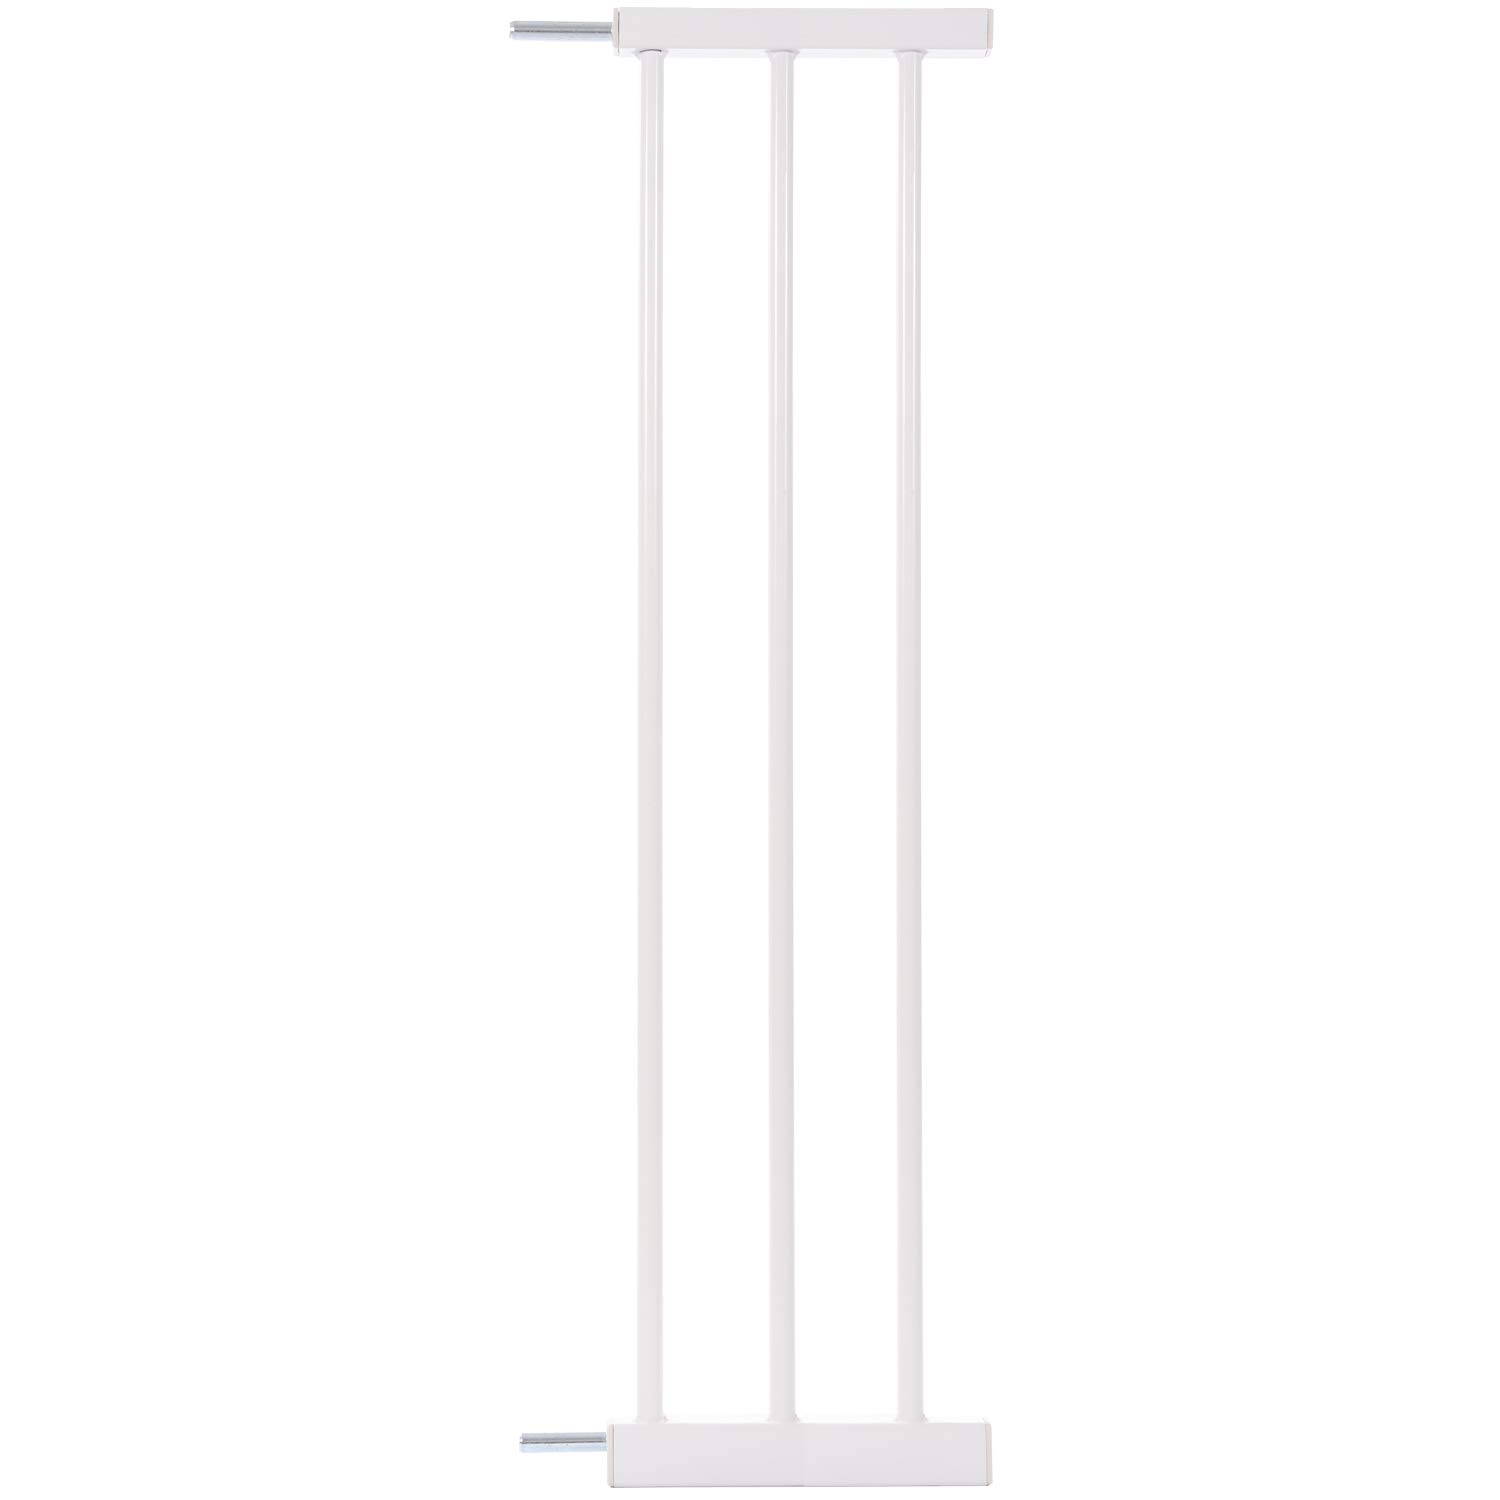 KIDIMAX Treppenschutzgitter Erweiterung (Verlängerung) 20 cm, steckbarer Gitter Aufsatz für Treppenschutz, weiß